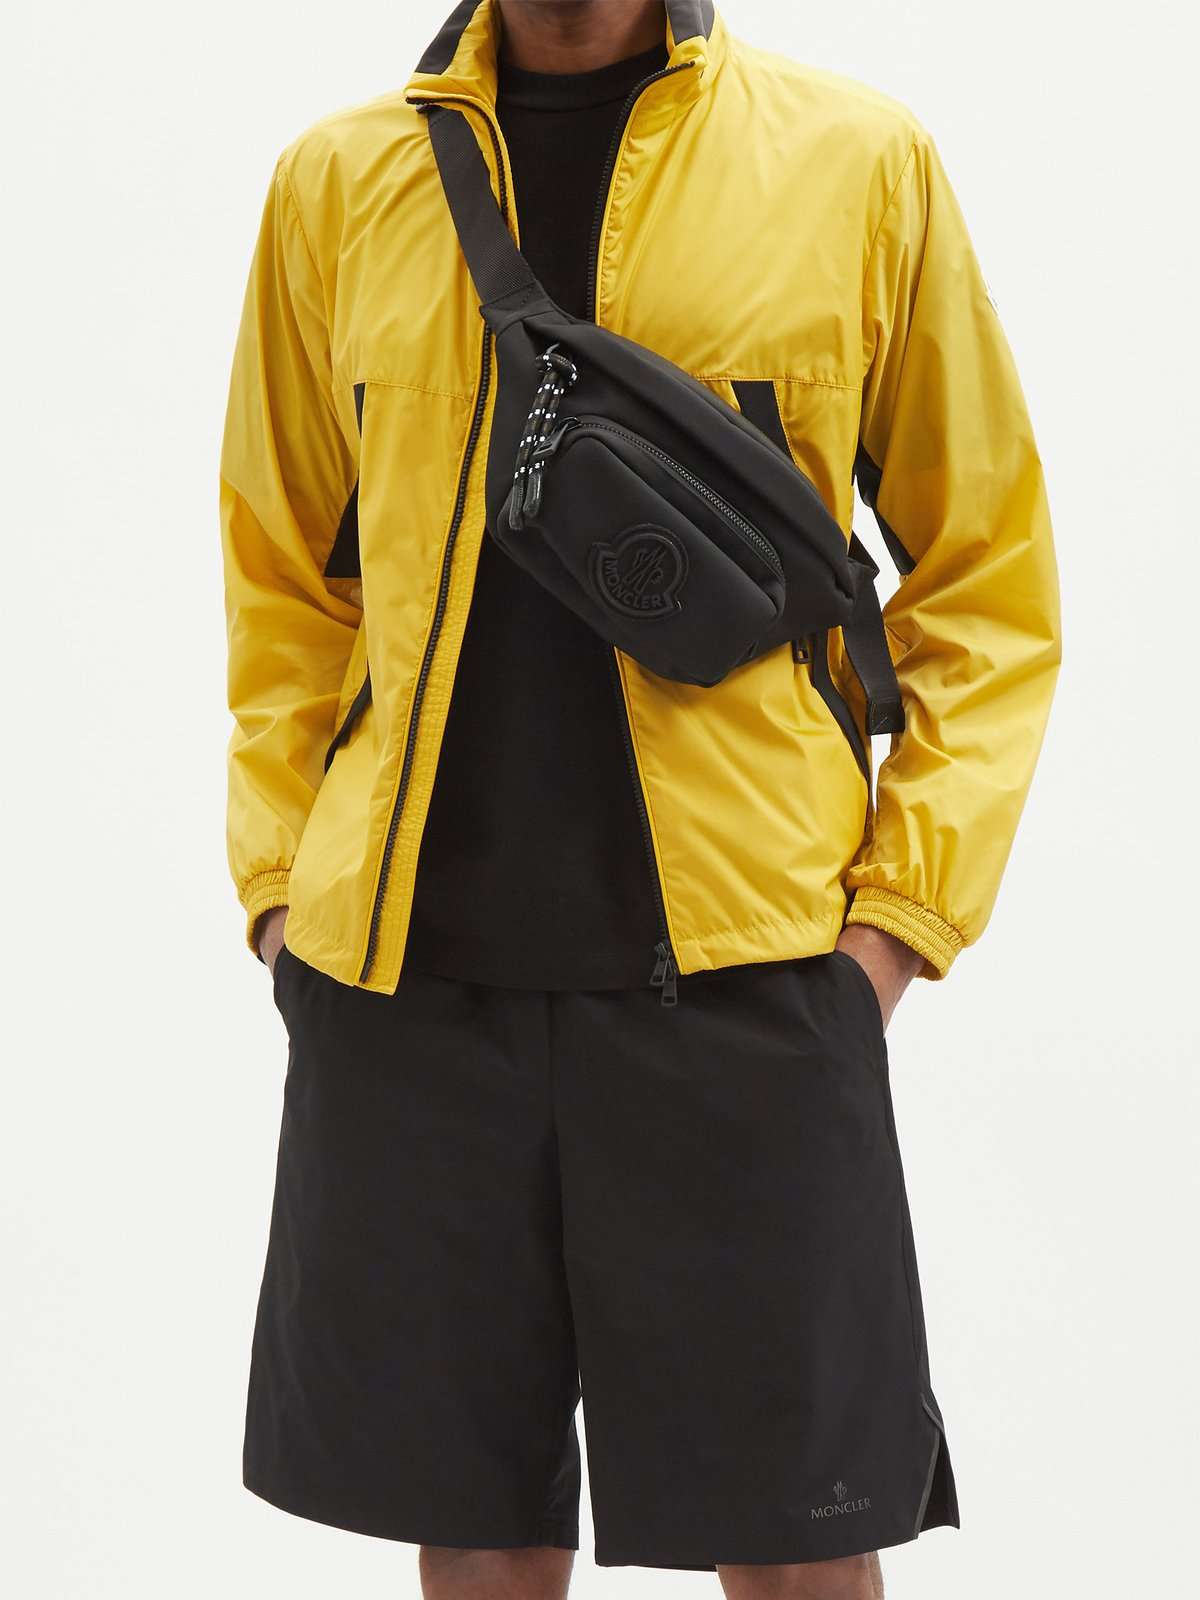 нейлоновая куртка Heiji с капюшоном